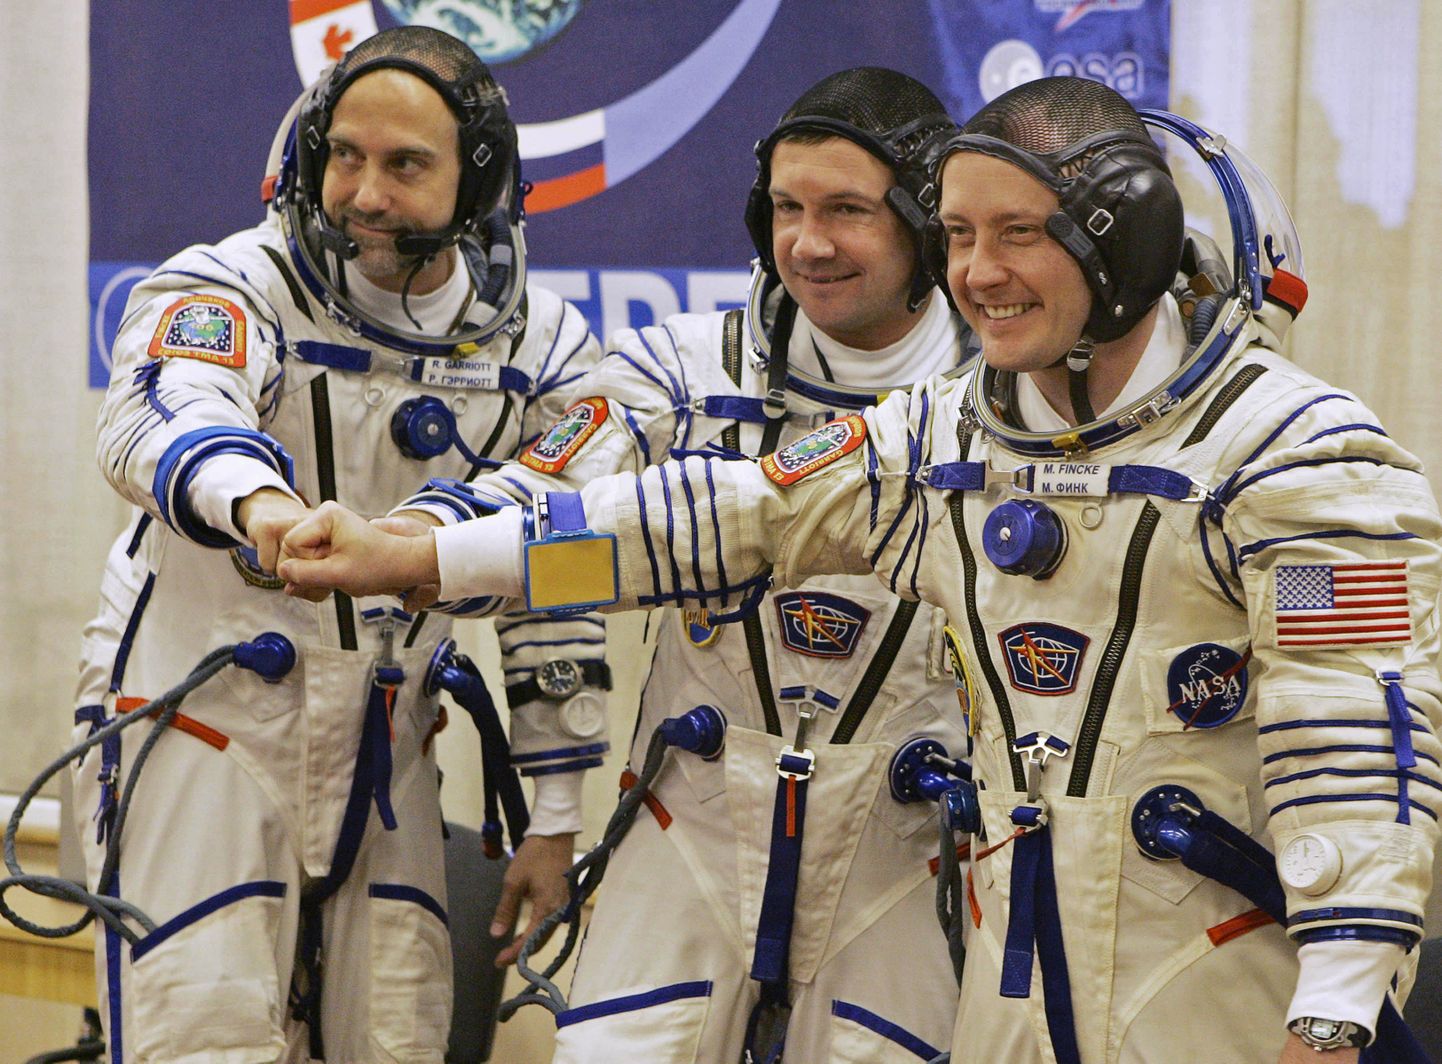 Vene kosmosemissiooni Sojuz TMA-13 meeskond: (vasakult) USA kosmoseturist Richard Garriott, Vene kosmonaut Juri Lontšakov ja USA astronaut Michael Fincke.